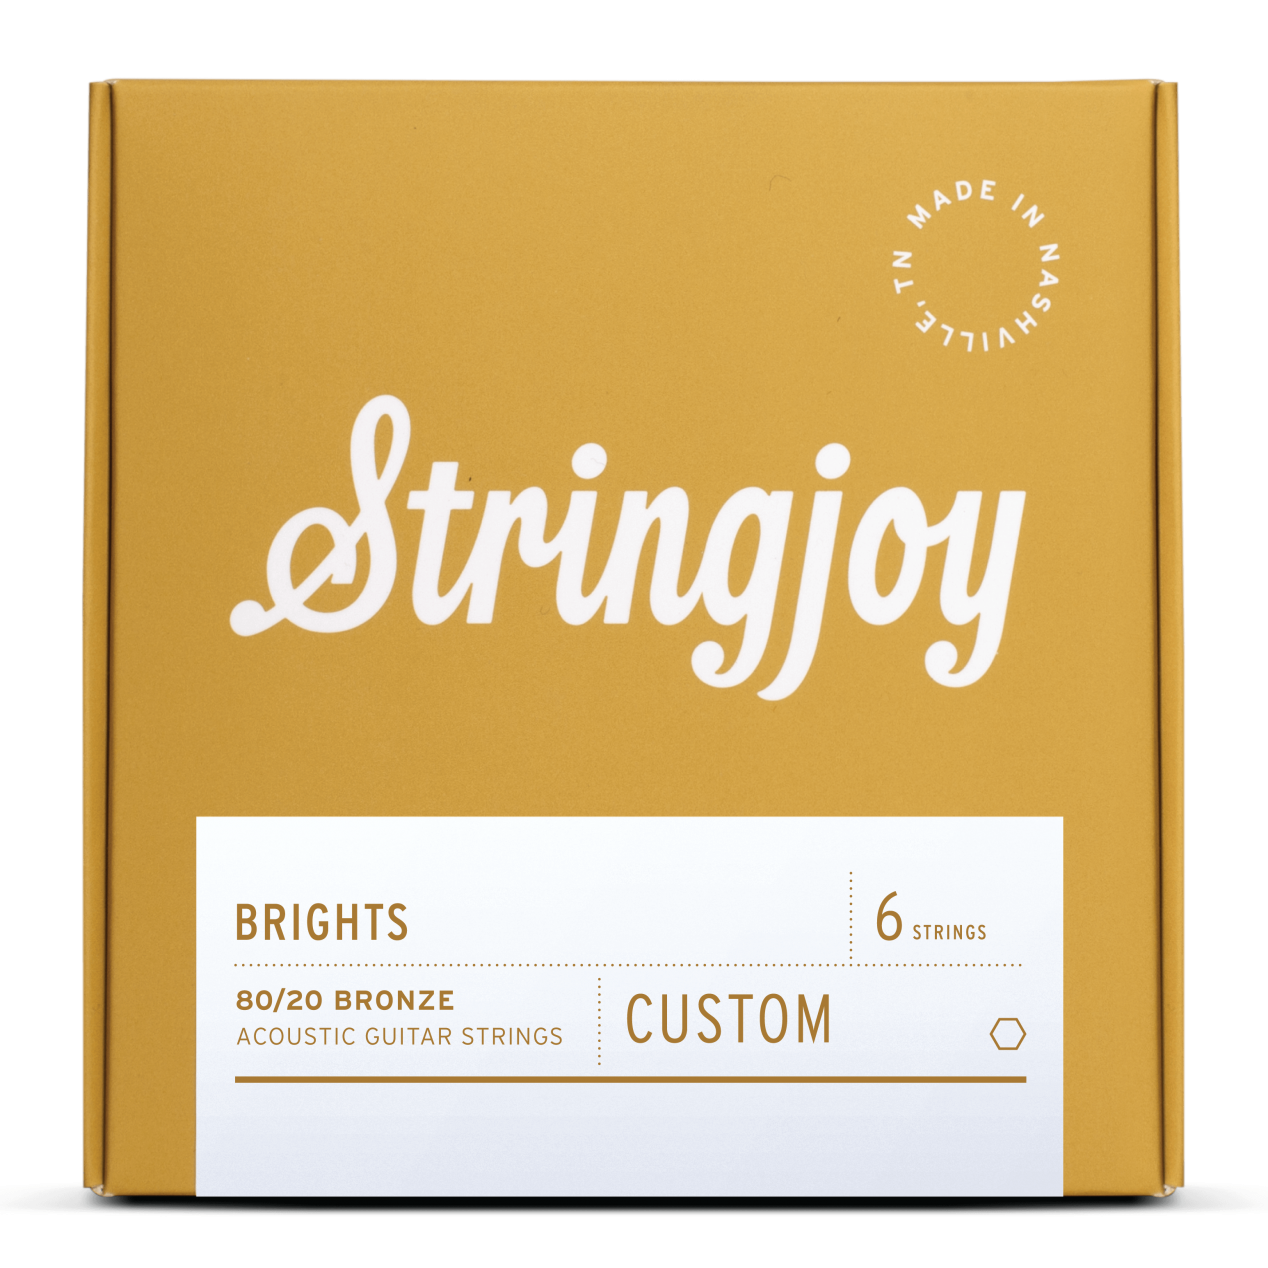 Stringjoy Brights